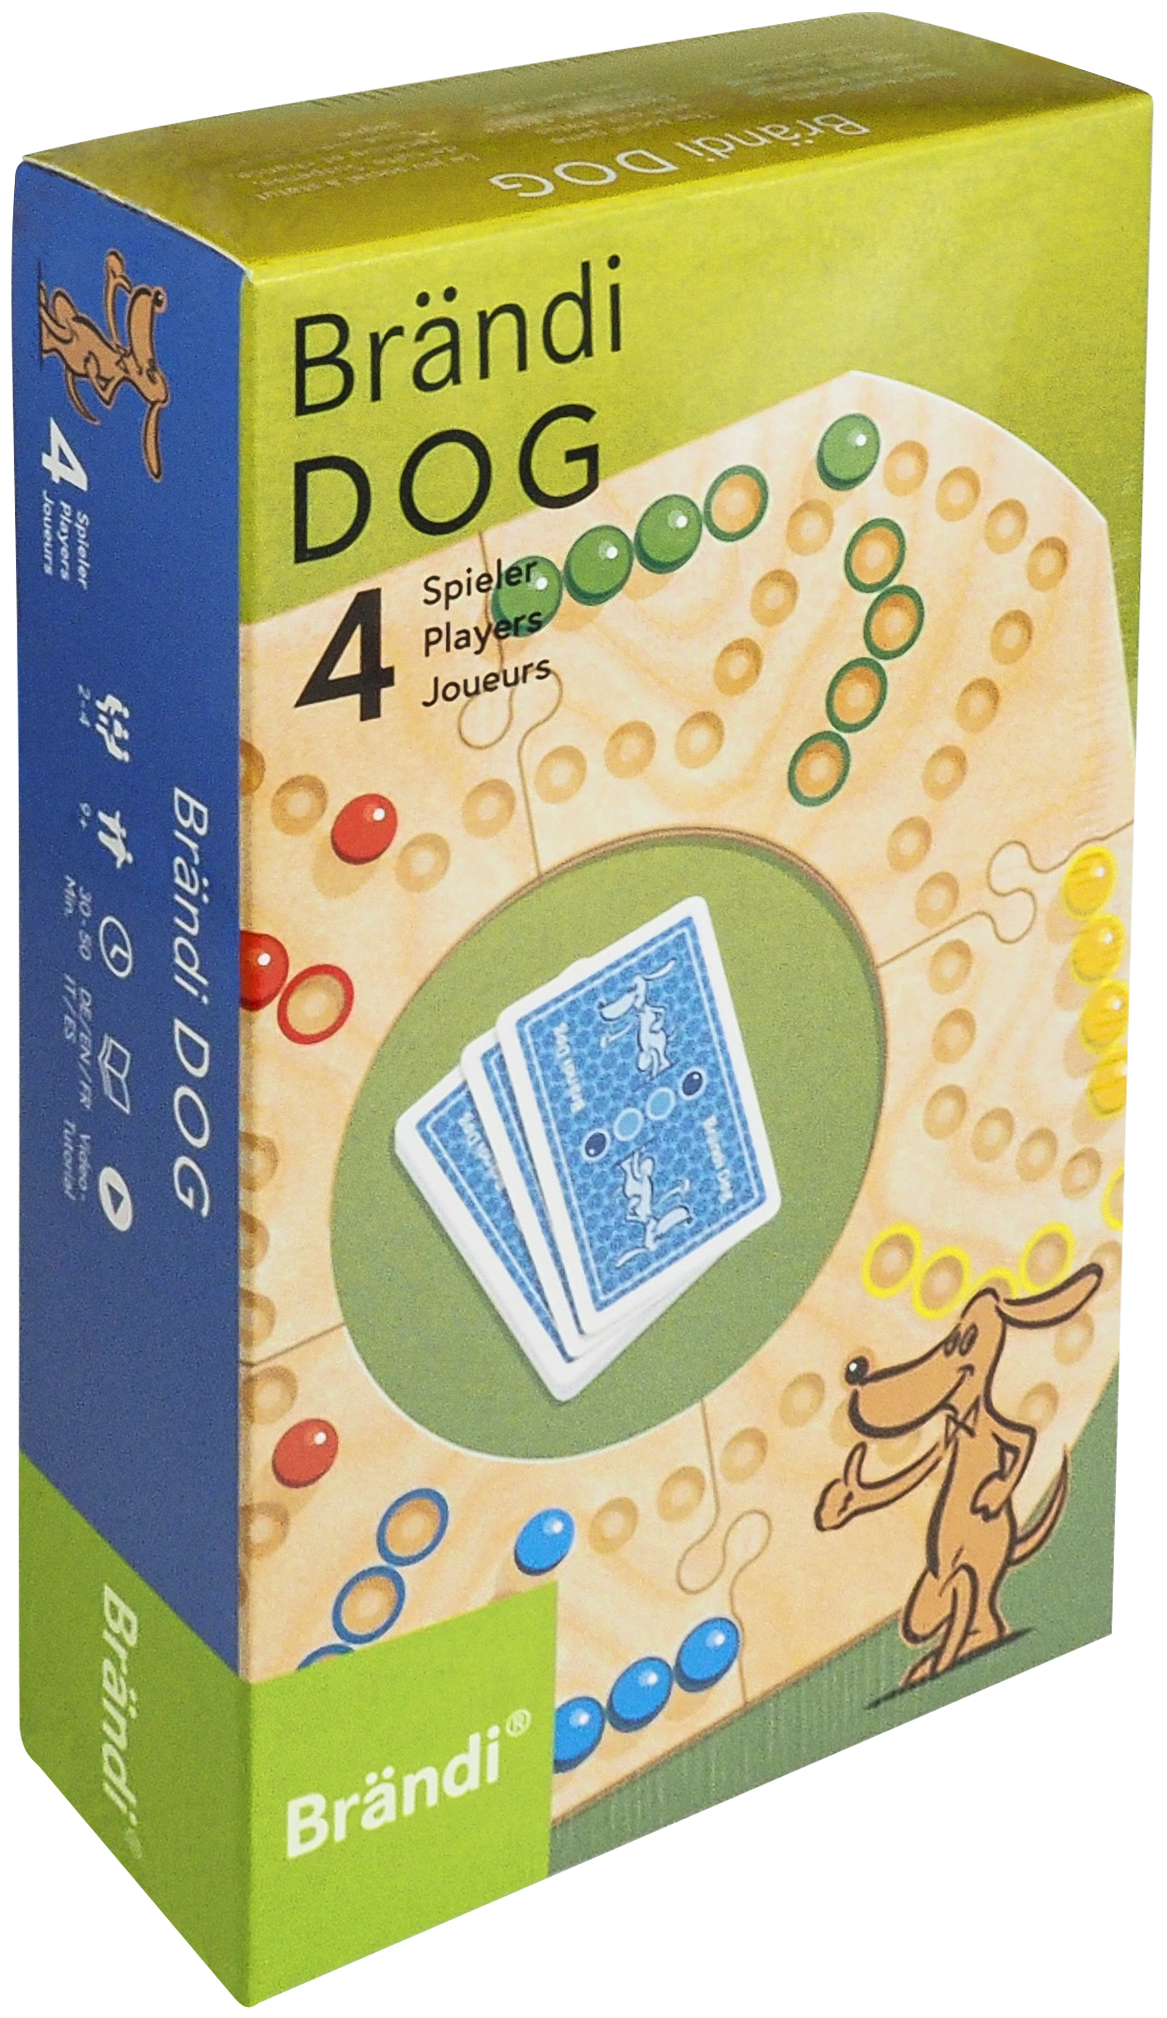 Brändi Dog 4er Set, Grundversion für 4 Spieler